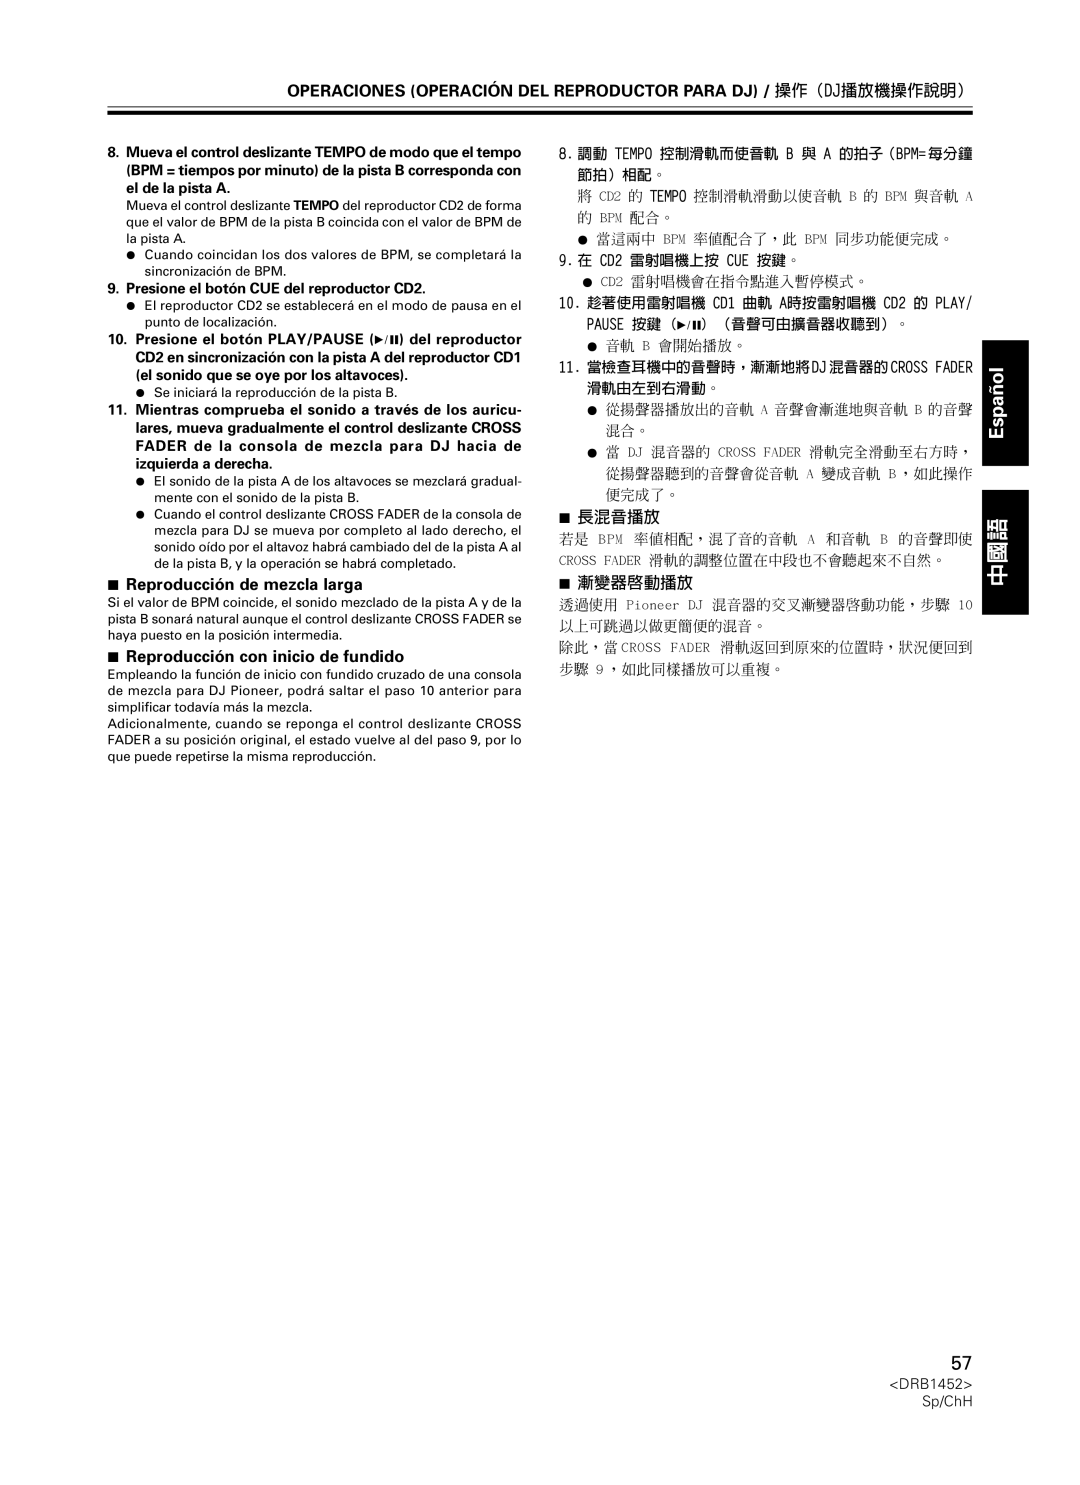 Pioneer CDJ-400 manual 7Reproducción de mezcla larga, 7Reproducción con inicio de fundido, 7長混音播放, 7漸變器啟動播放, Español 